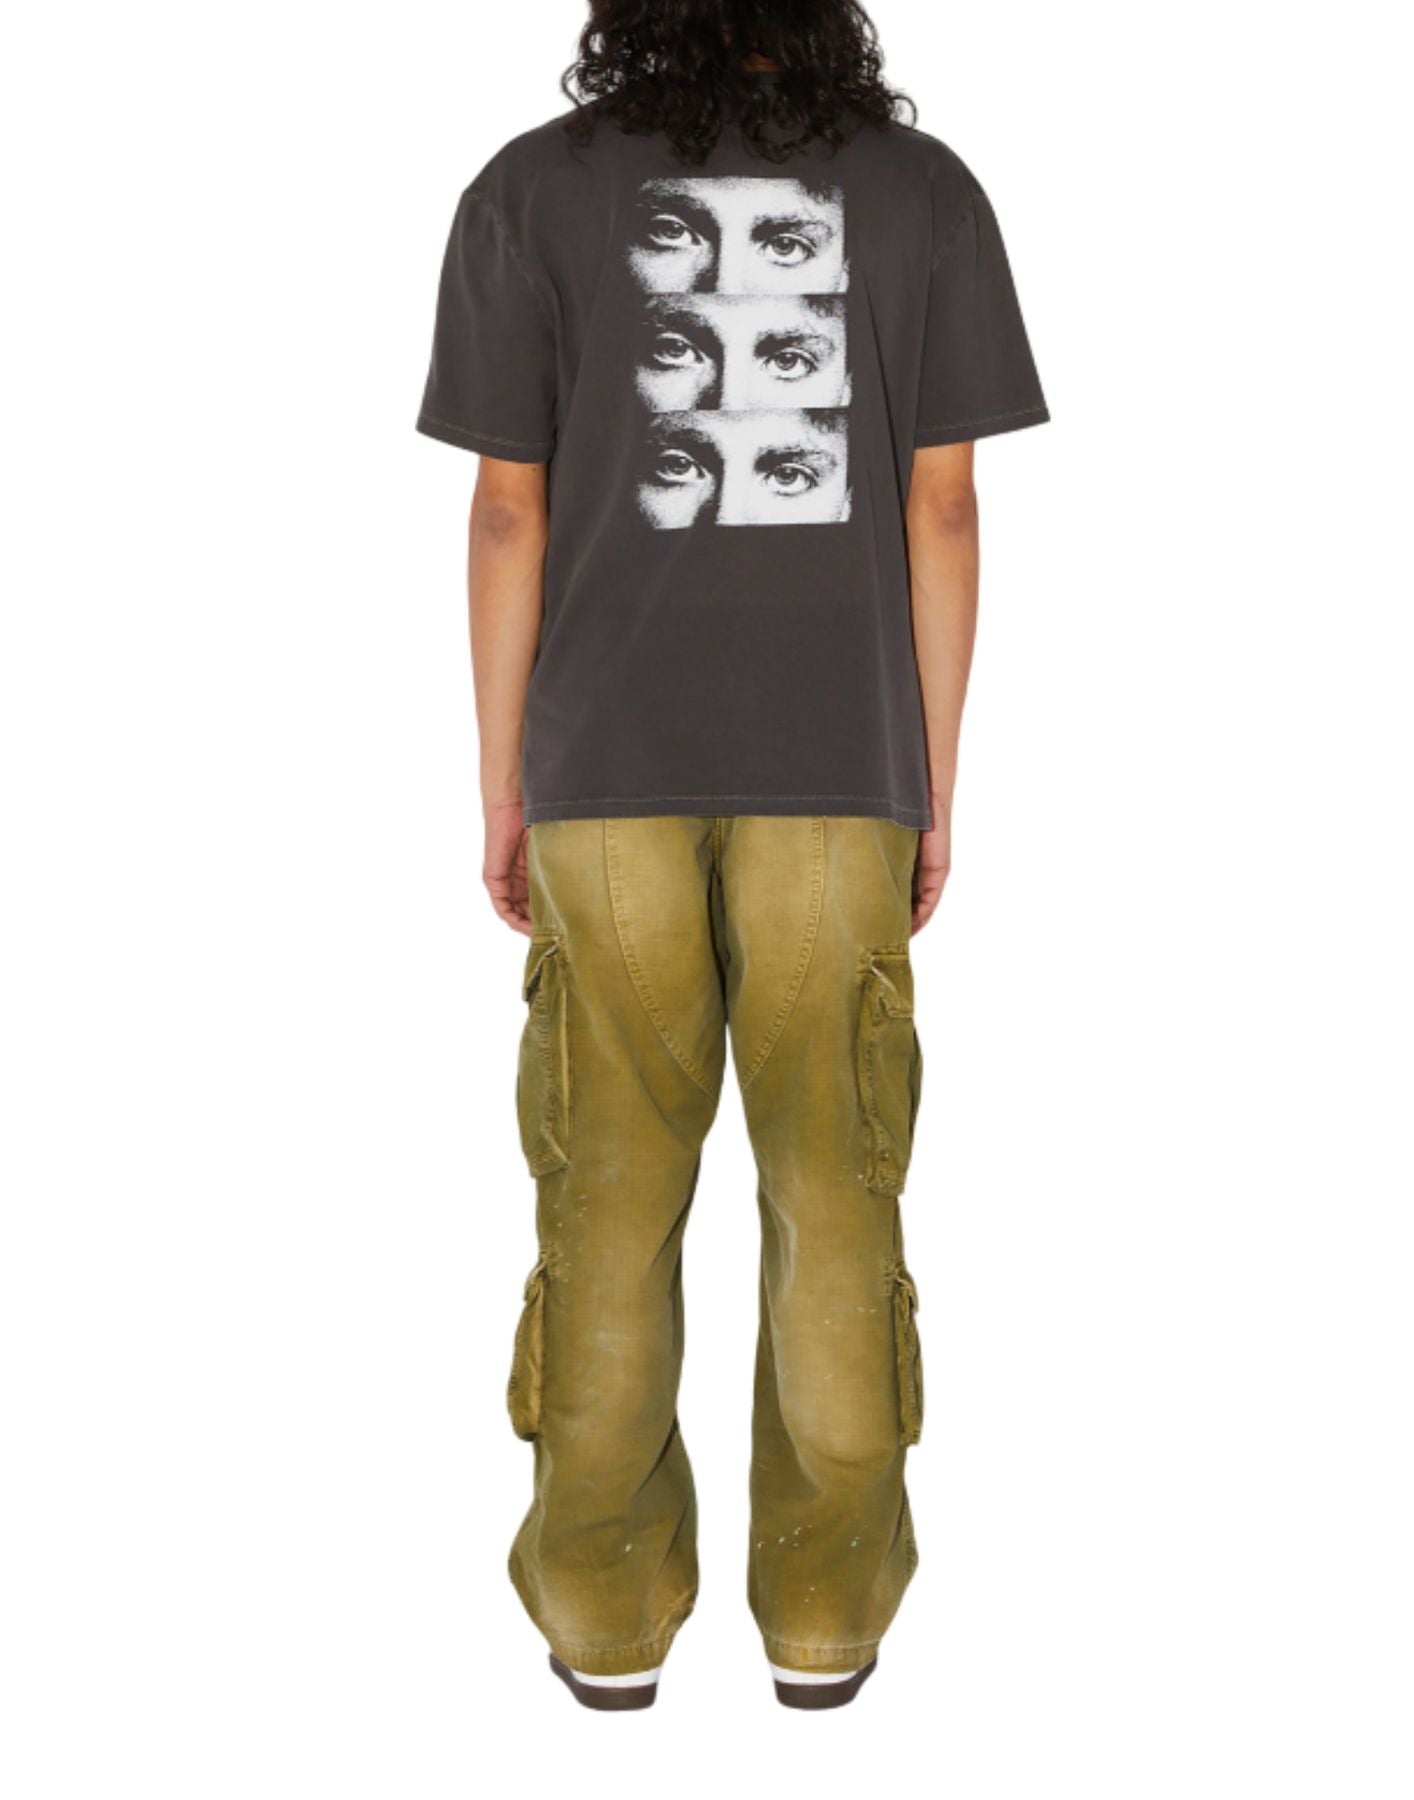 Camiseta para el hombre amu071ce680304 lavado negro Amish